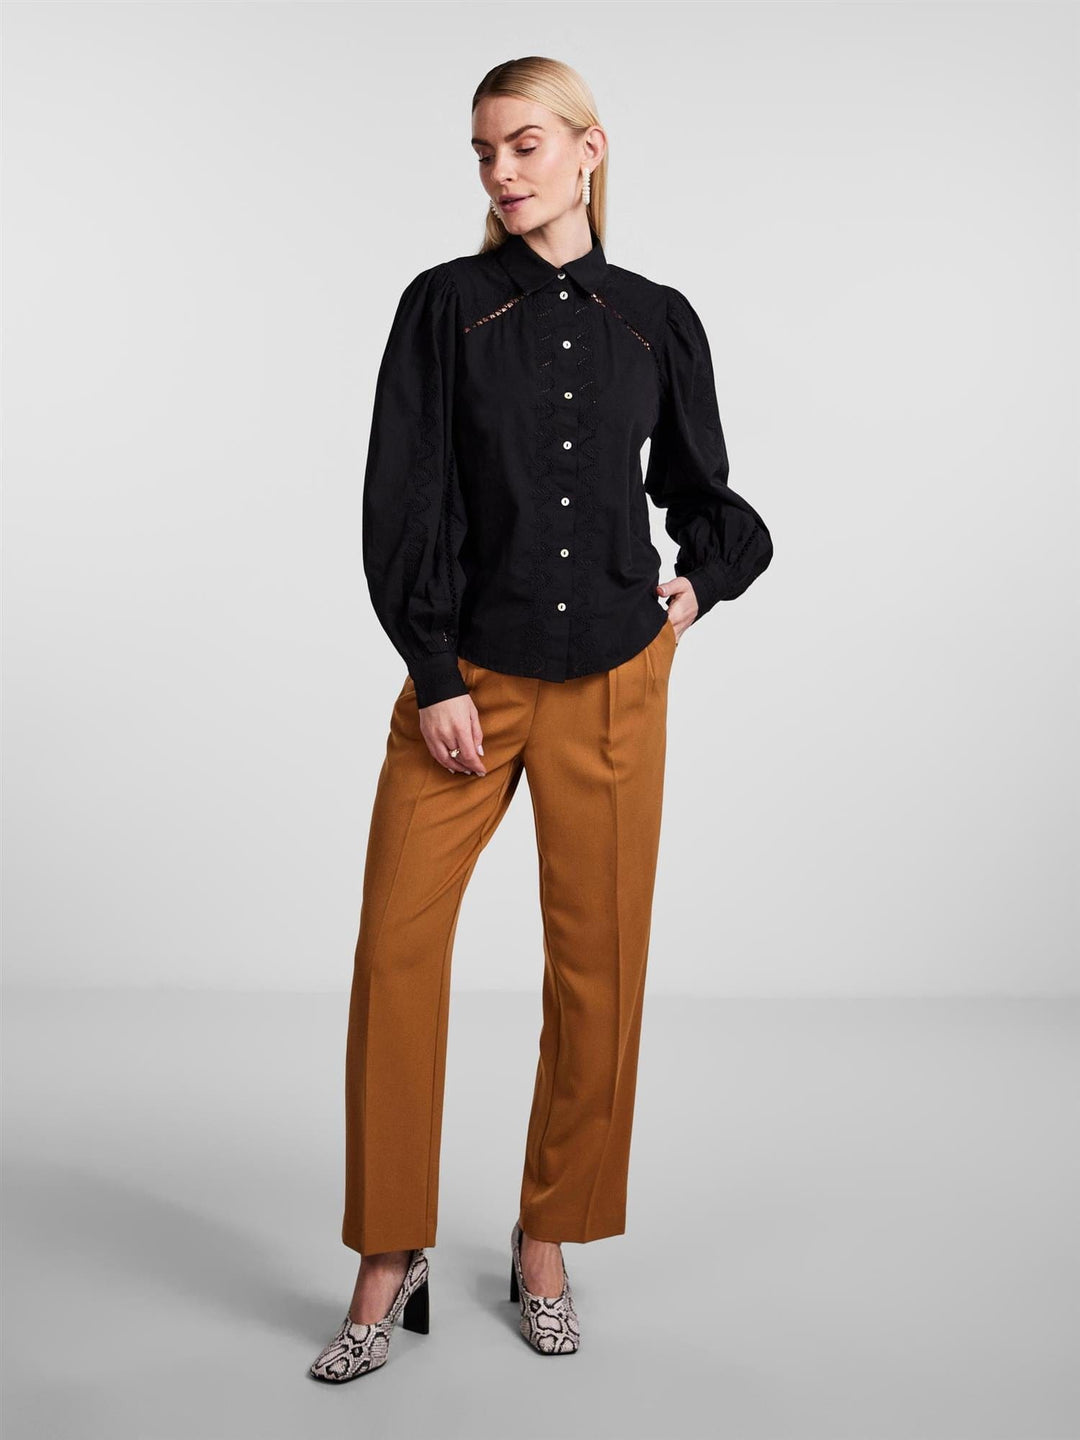 Yaskenora Ls Shirt Black | Skjorter og bluser | Smuk - Dameklær på nett